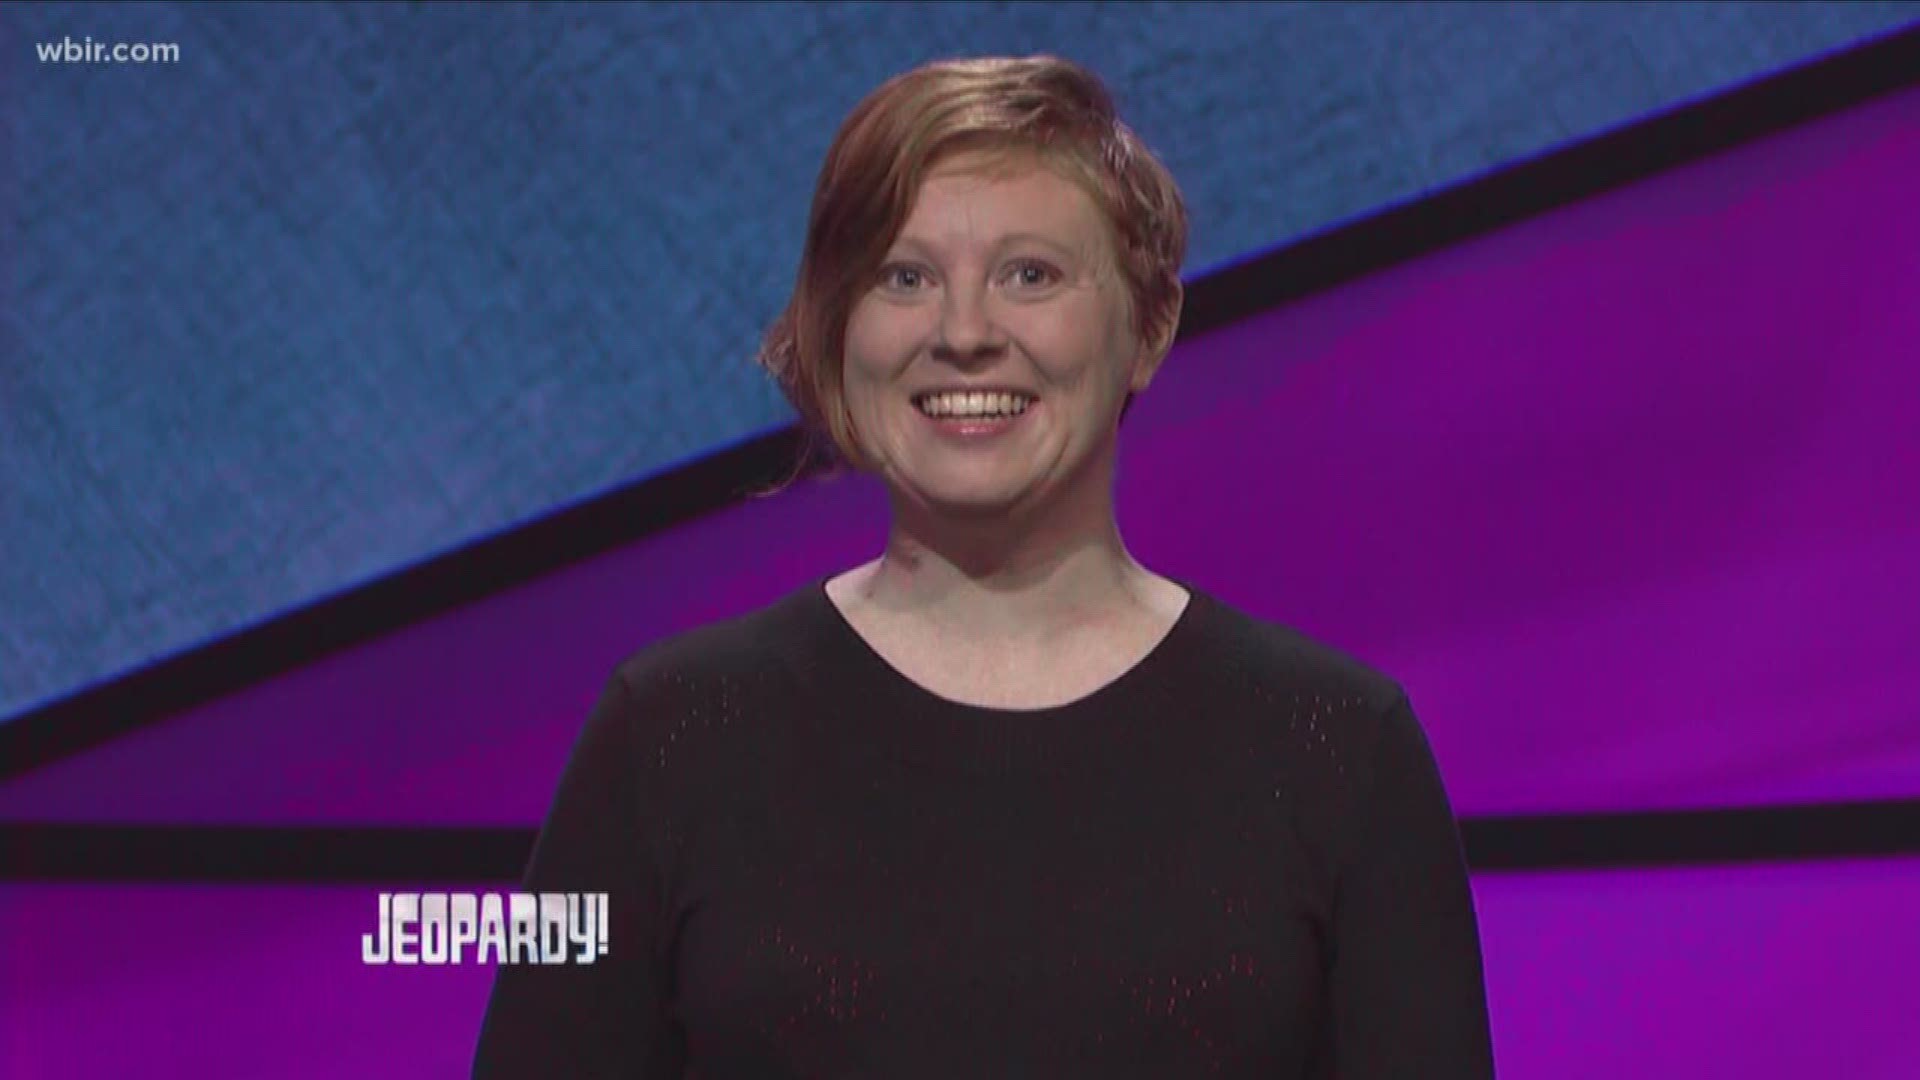 Scarlett Sims from Oak Ridge will compete on tonight's episode of Jeopardy. Good luck Scarlett!